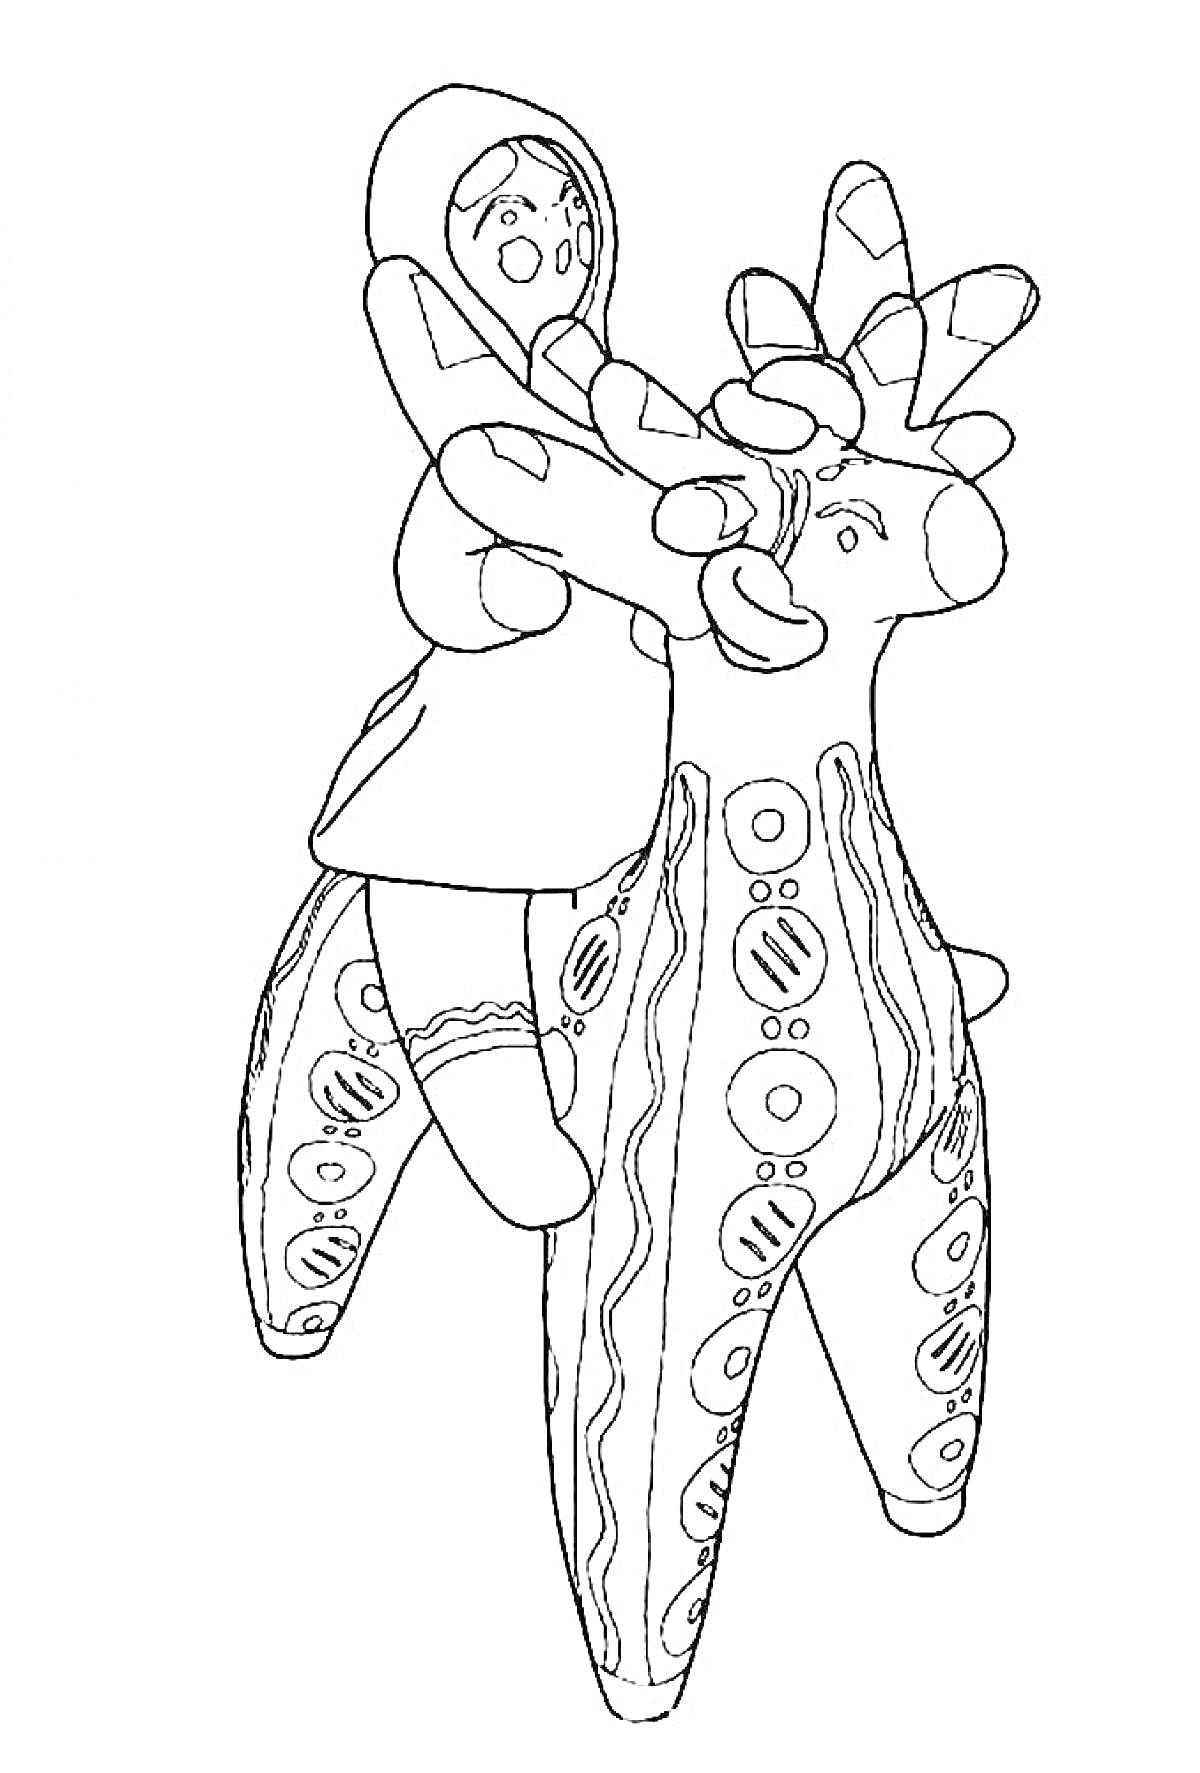 Раскраска Женщина в платке на расписном олене или коне